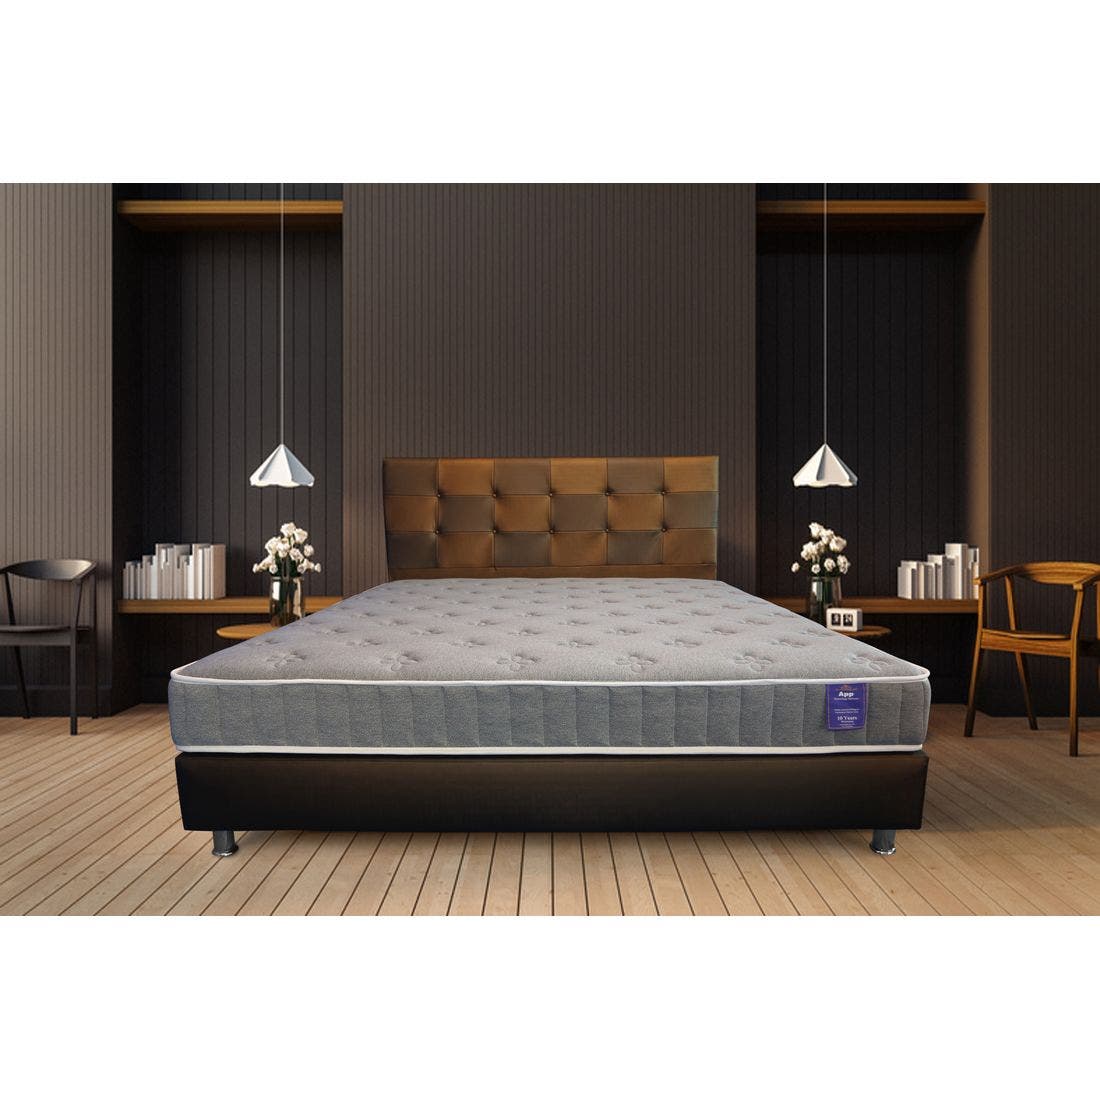 39015050-mattress-bedding-mattresses-spring-mattresses-31